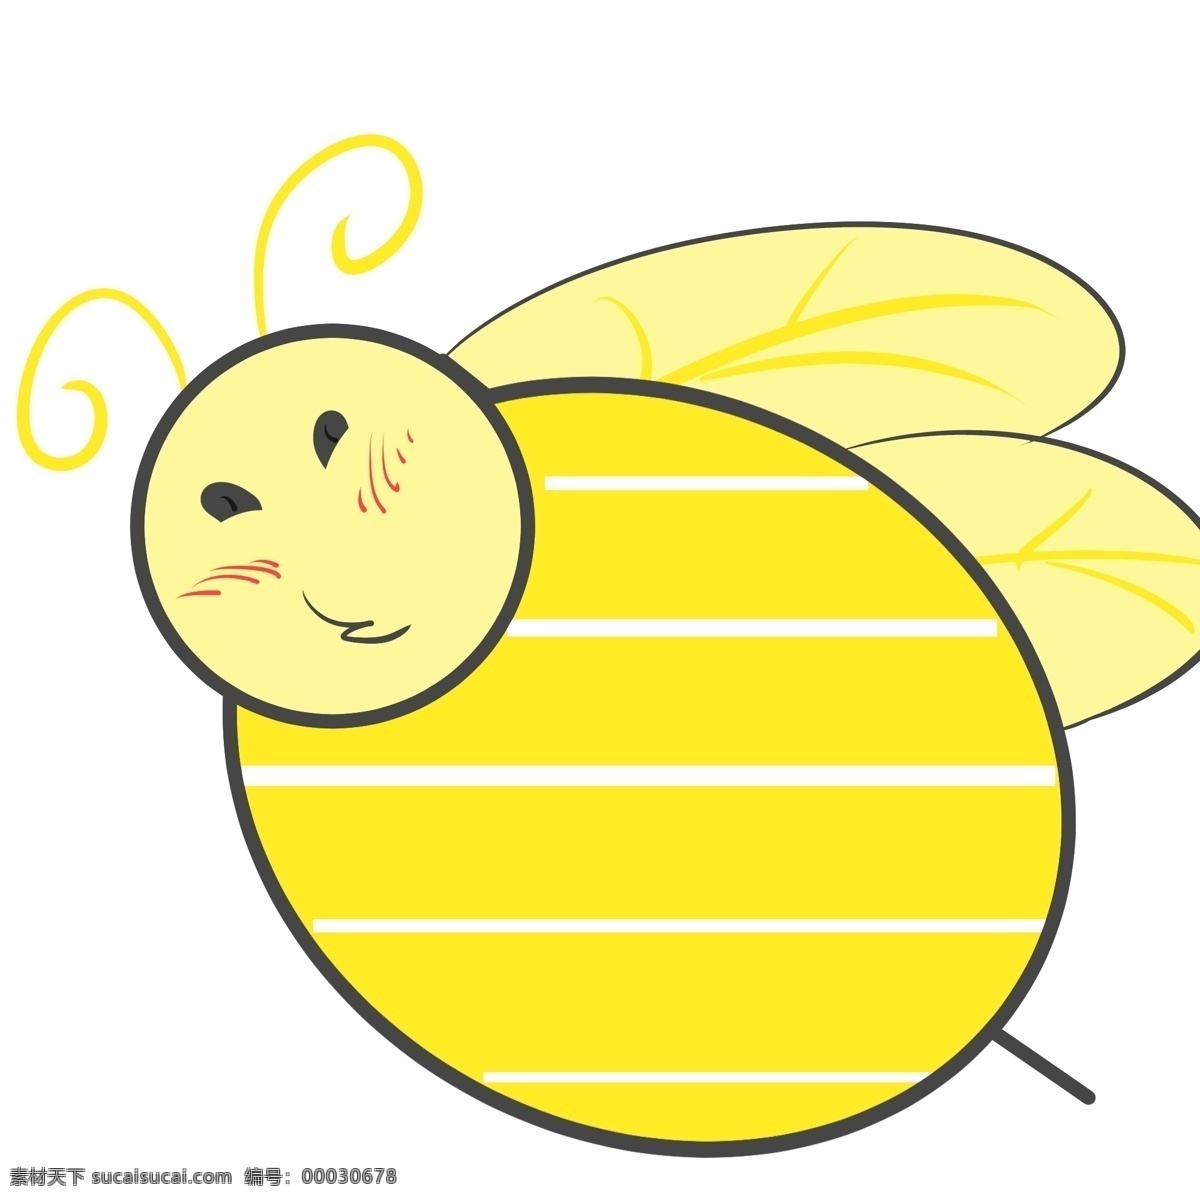 便签 蜜蜂 卡通 插画 便签的蜜蜂 卡通插画 便签插画 纸条插画 备忘录 提示录 蜜蜂的动物